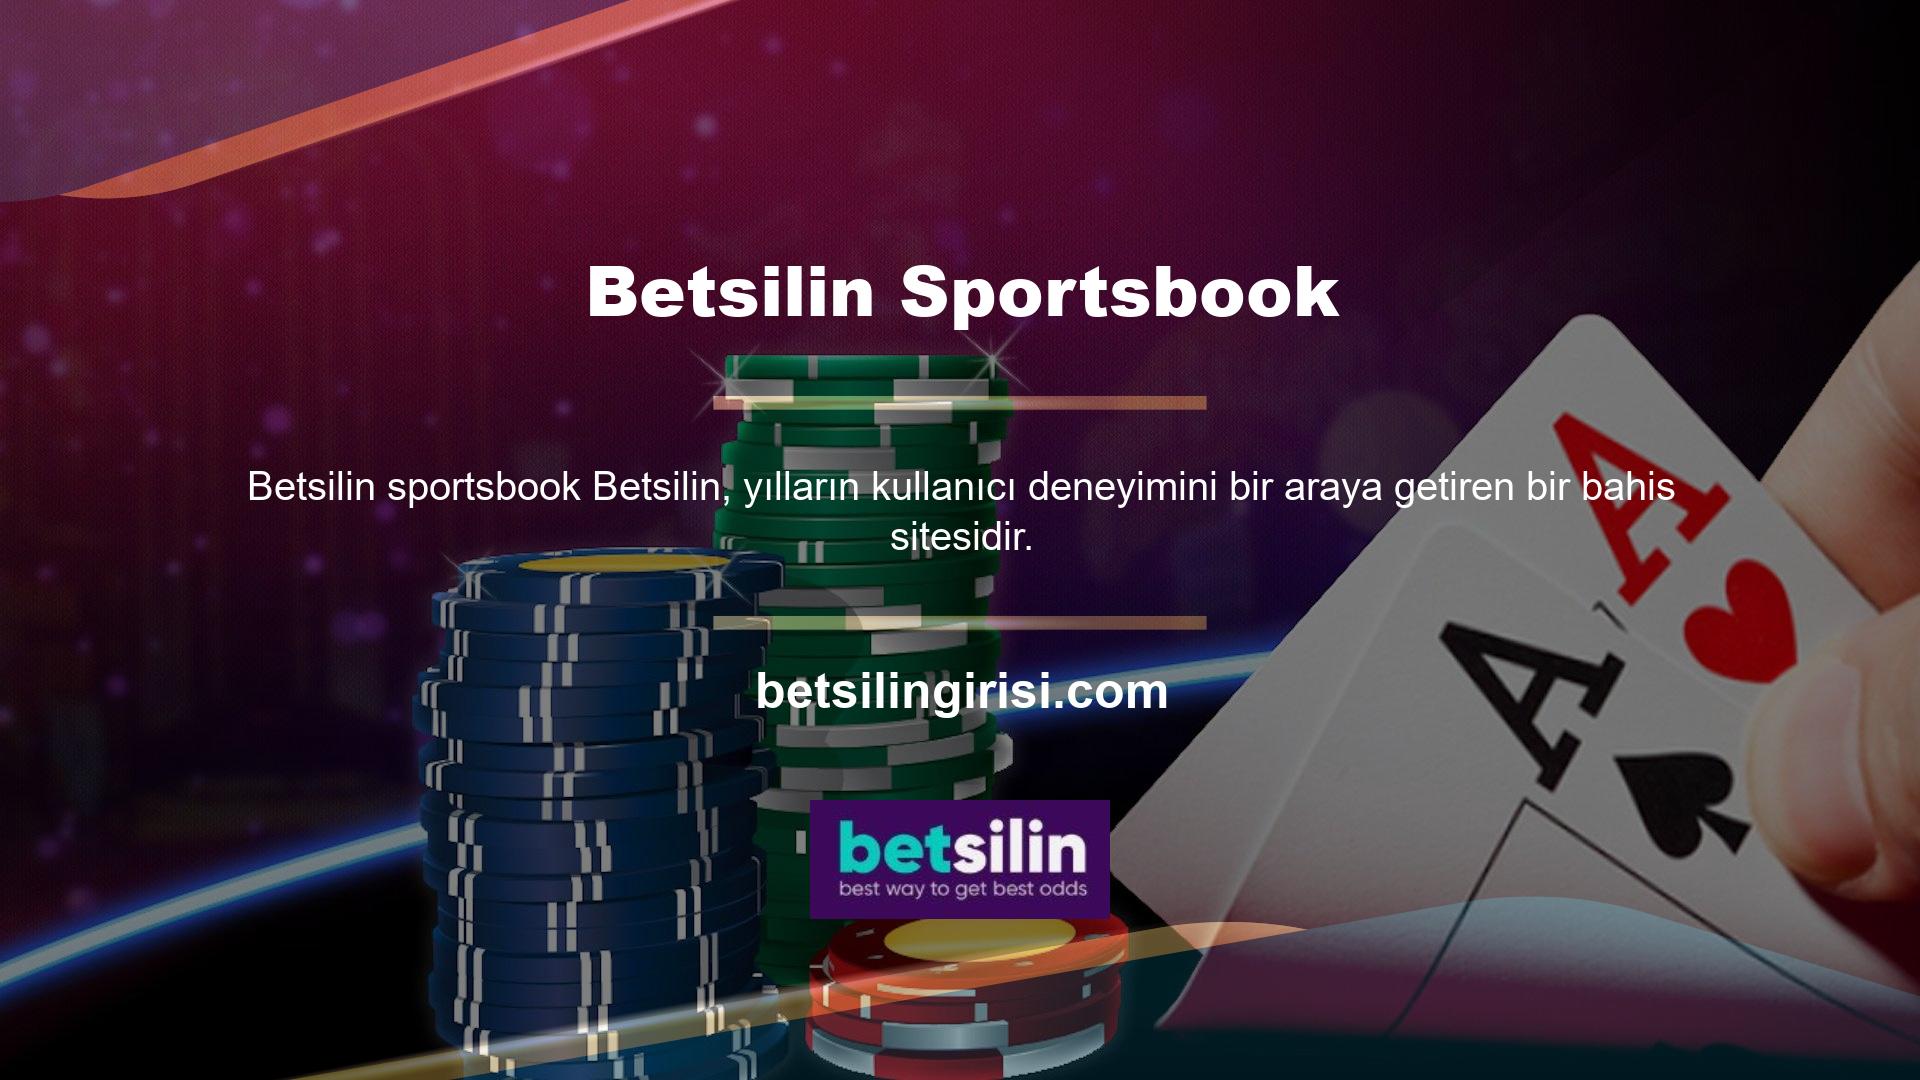 Site, büyük Betsilin sportsbook ve yüksek kazanma oranları ile tanınır